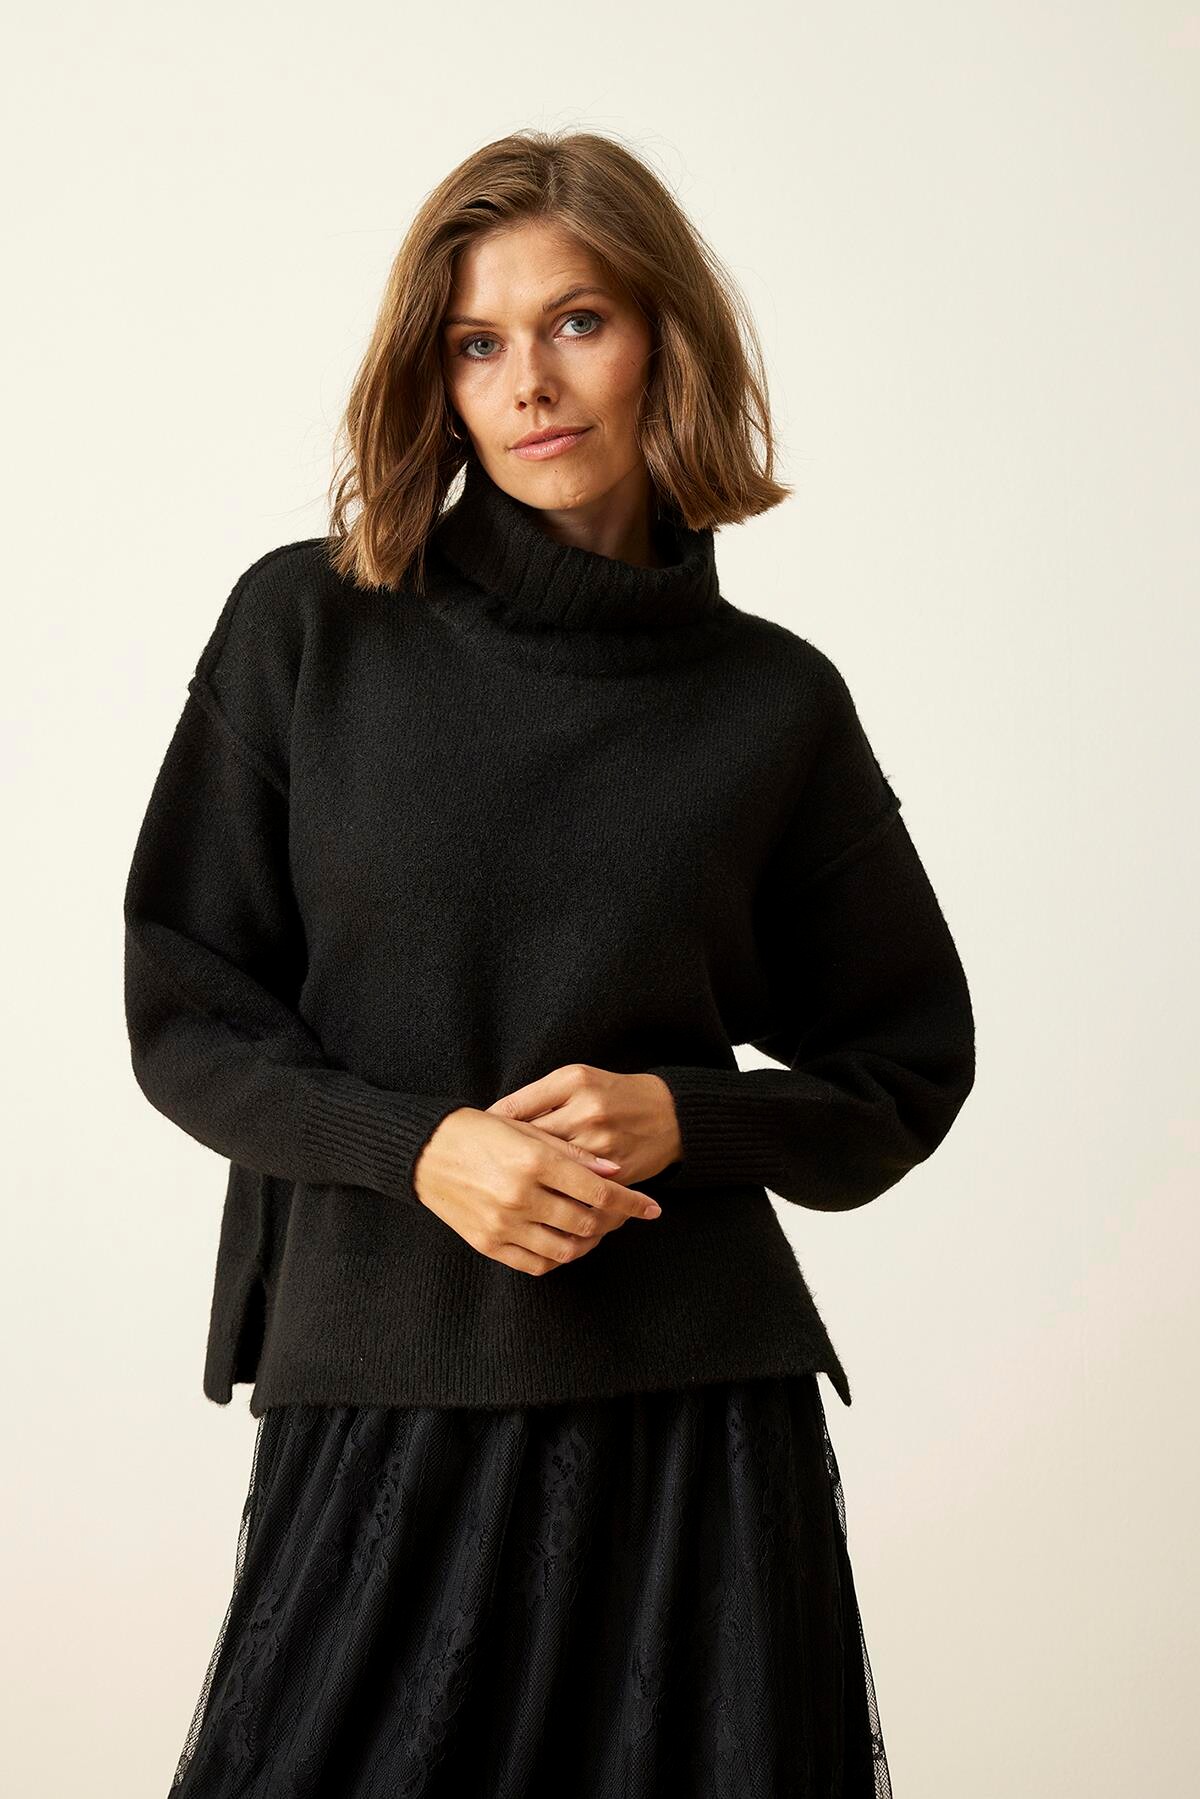 Se IN FRONT Loulou Sweater, Farve: Black, Størrelse: S, Dame hos Infront Women